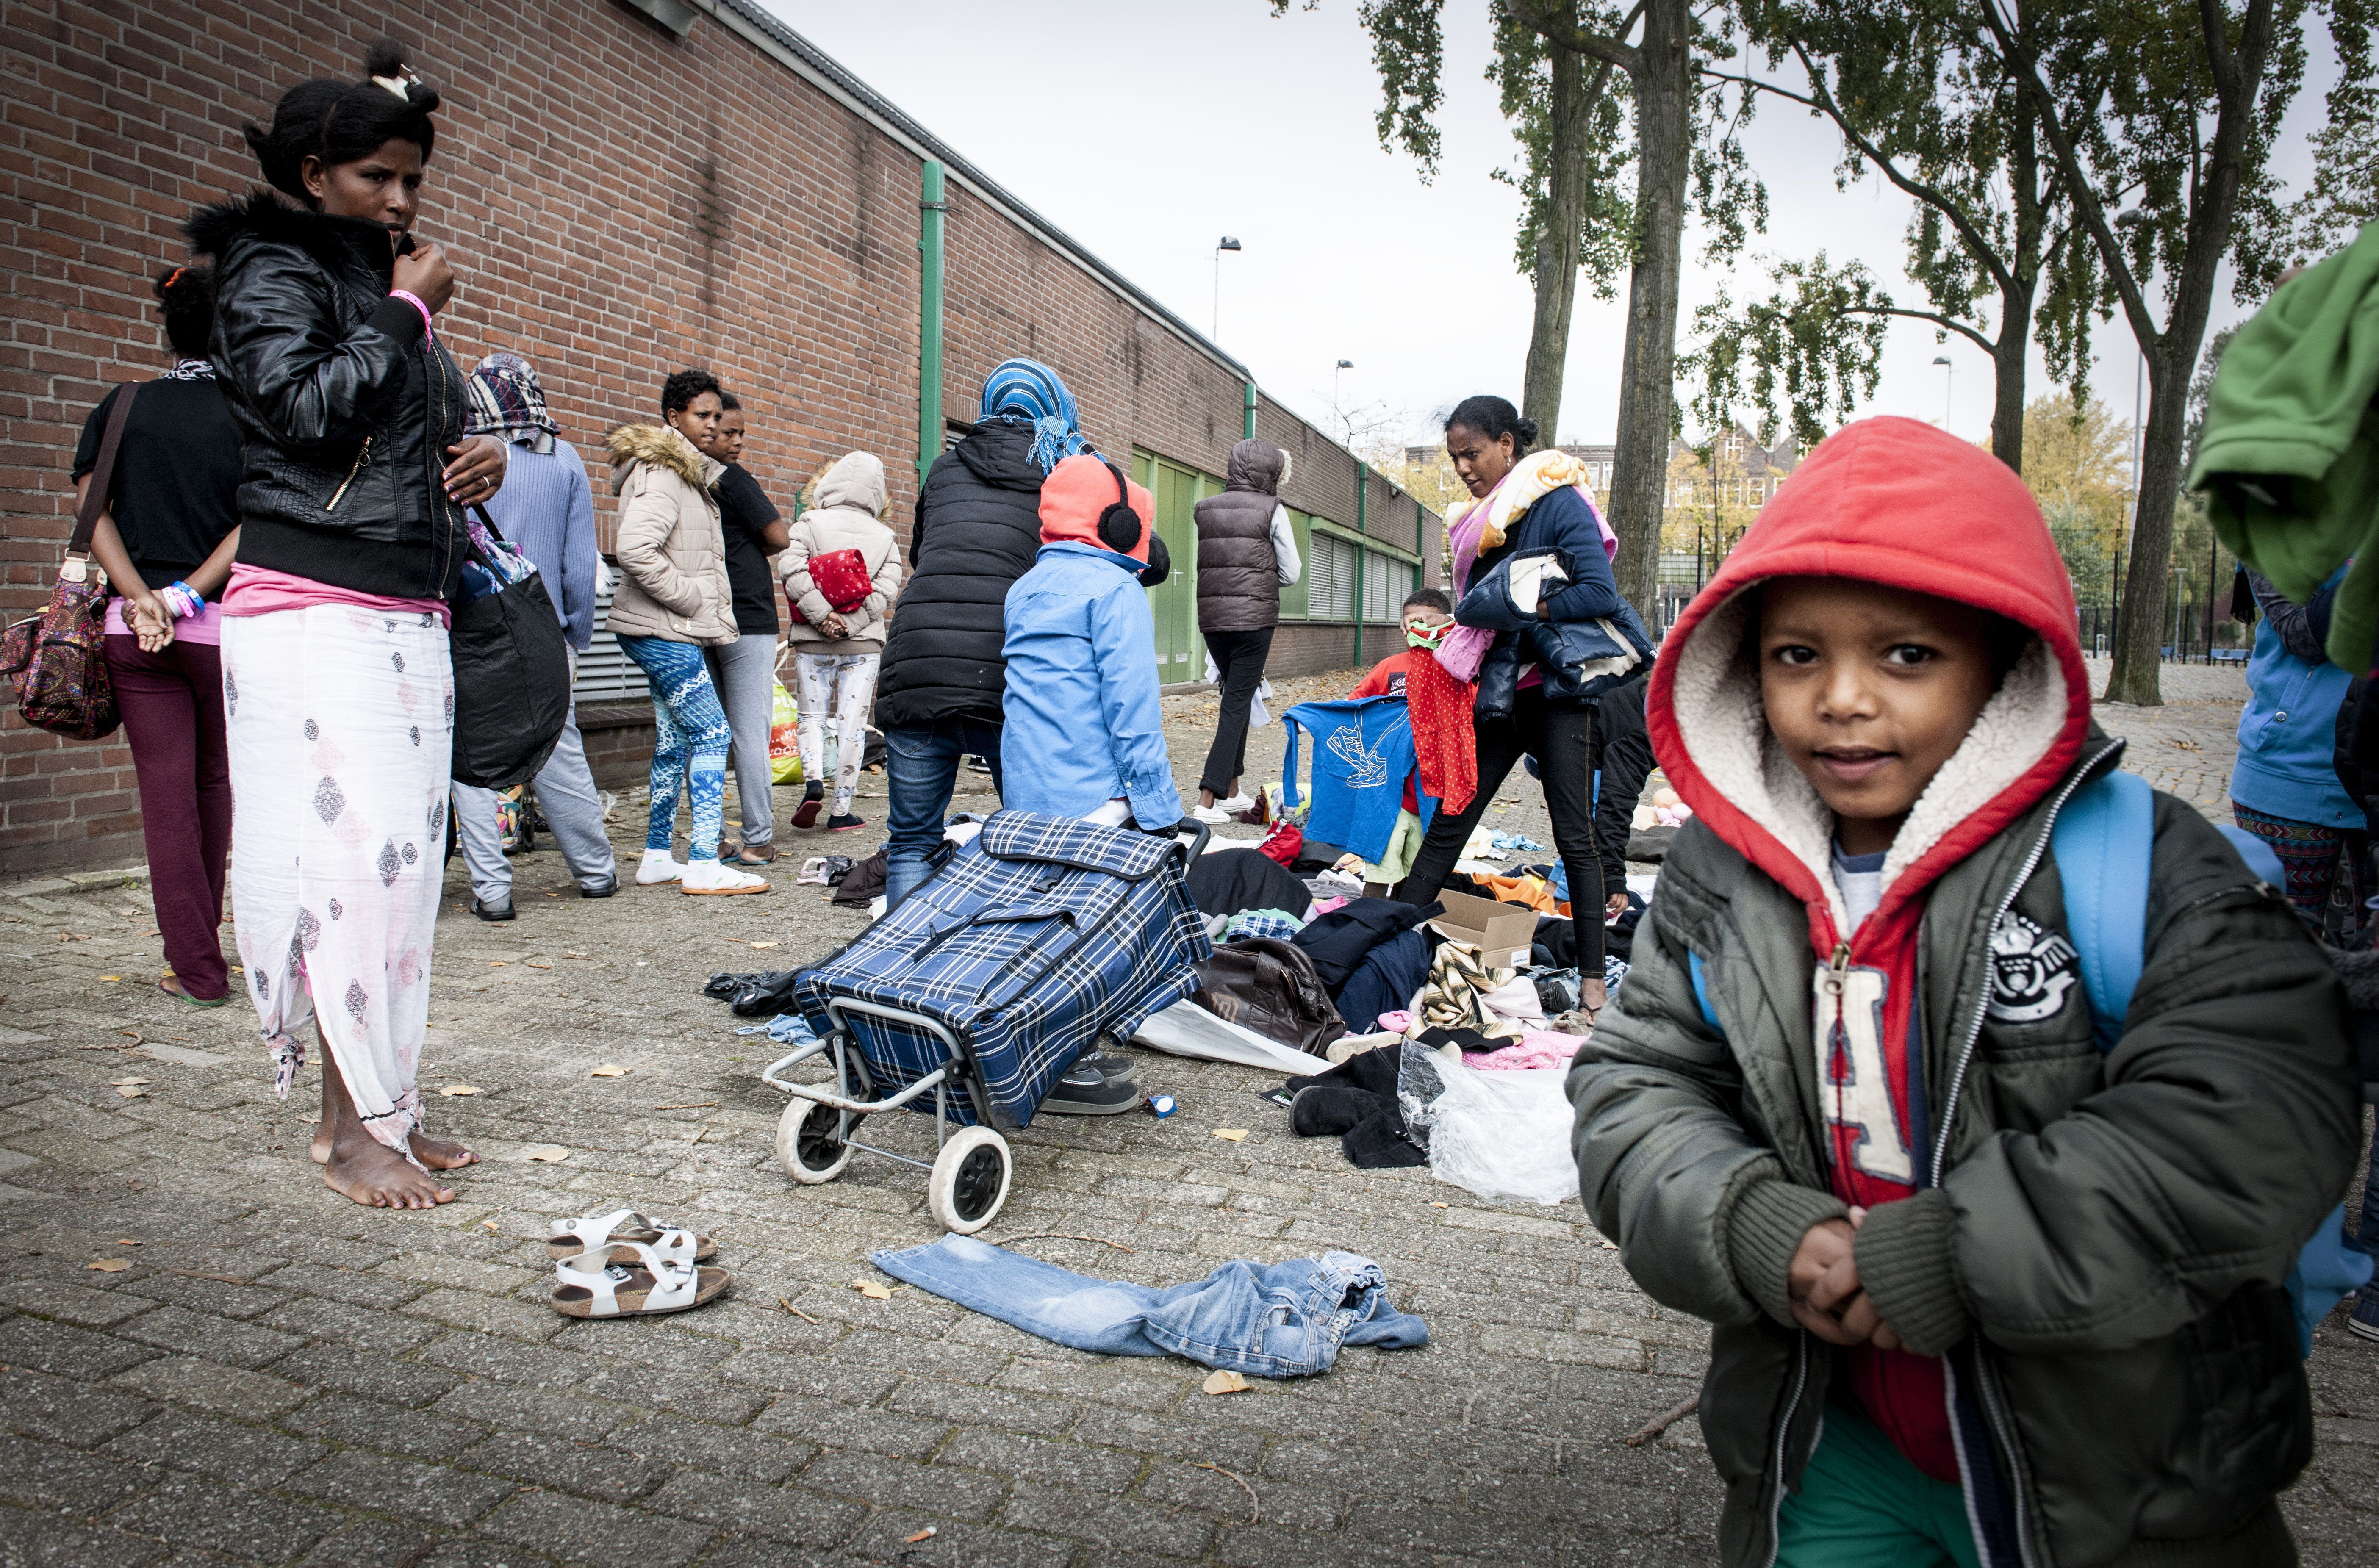 O nouă sursă de refugiaţi. Dictaturile africane „alimentează” criza imigranţilor din Europa